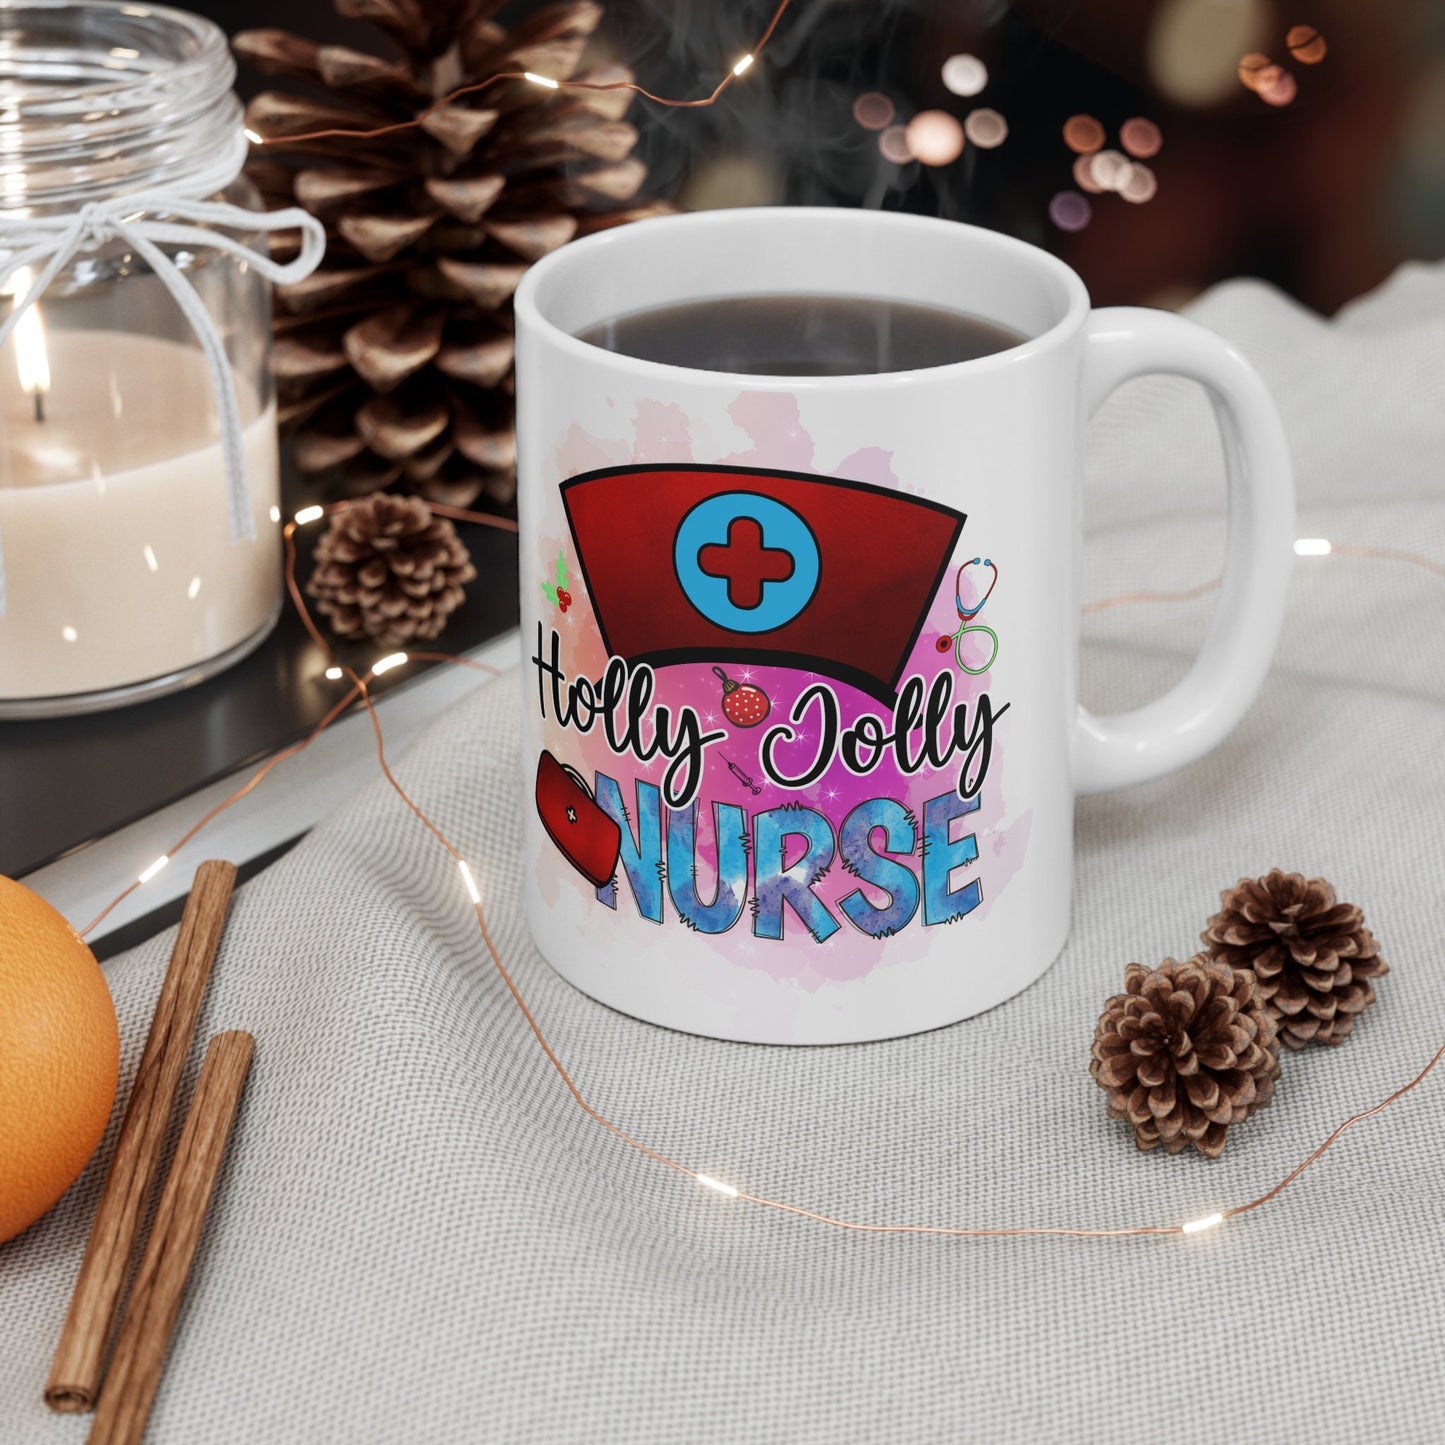 Holly Jolly Nurse Christmas Mug, Perfect Holiday Cheer Coffee Mug, Gift Mug for Christmas Spirit, Cute Christmas mug for Family and friends